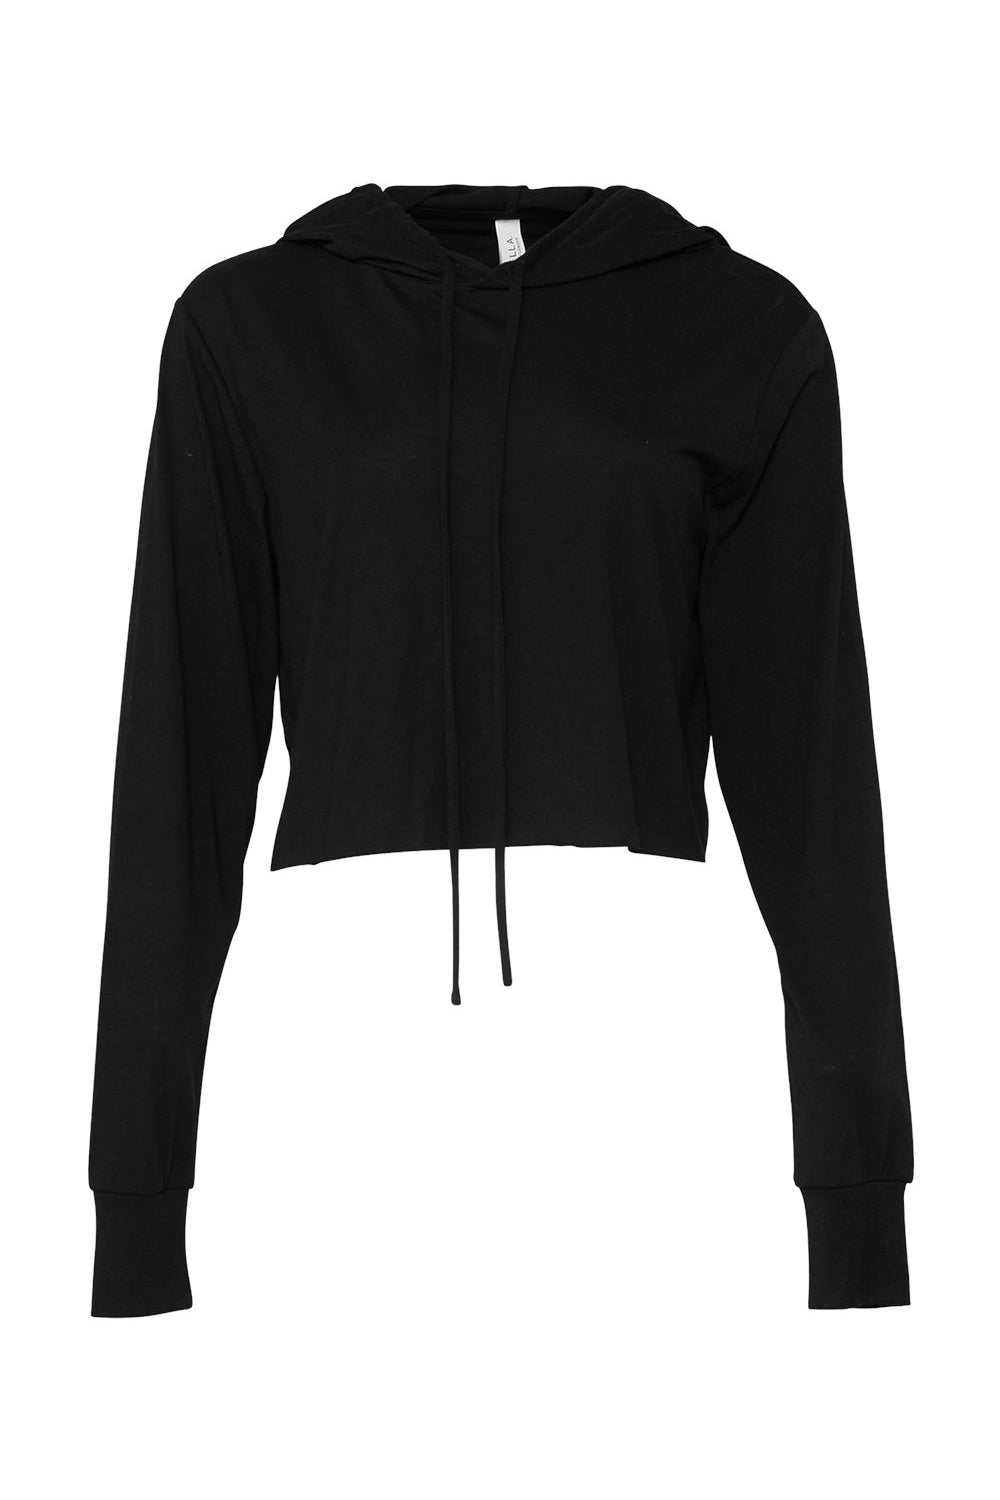 Bella + Canvas 8512 Womens Crop Long Sleeve Hooded Sweatshirt Hoodie Solid Black Flat Front